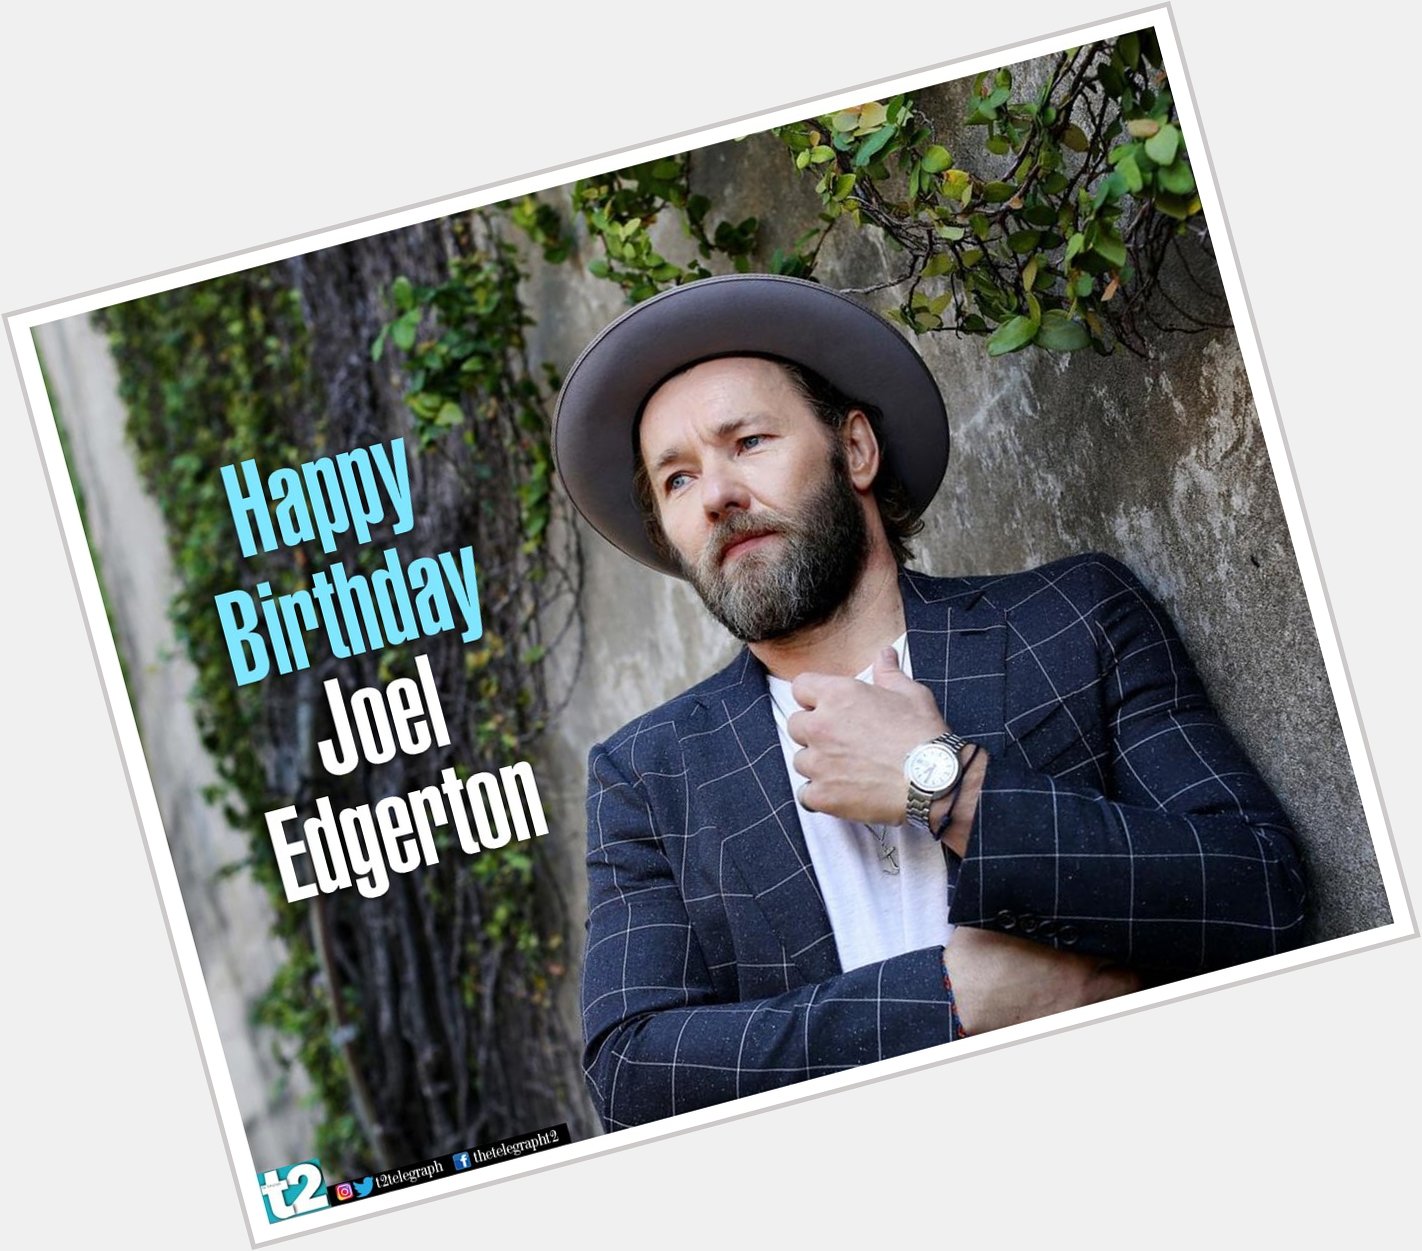 Effective actor. Sensitive filmmaker. Here\s wishing Joel Edgerton a happy birthday! 